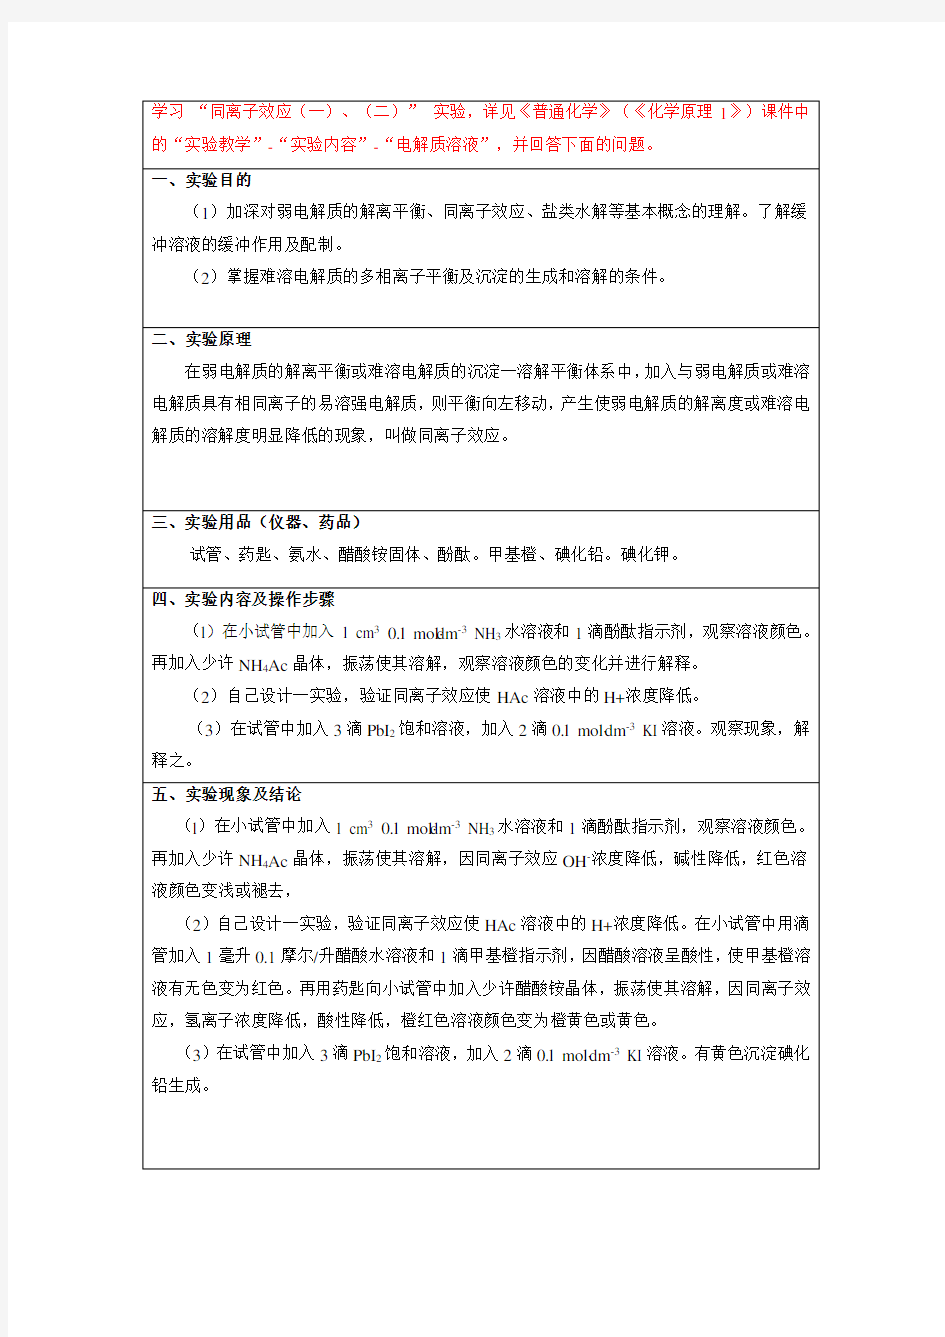 (完整版)中国石油大学华东现代远程教育普通化学实验报告